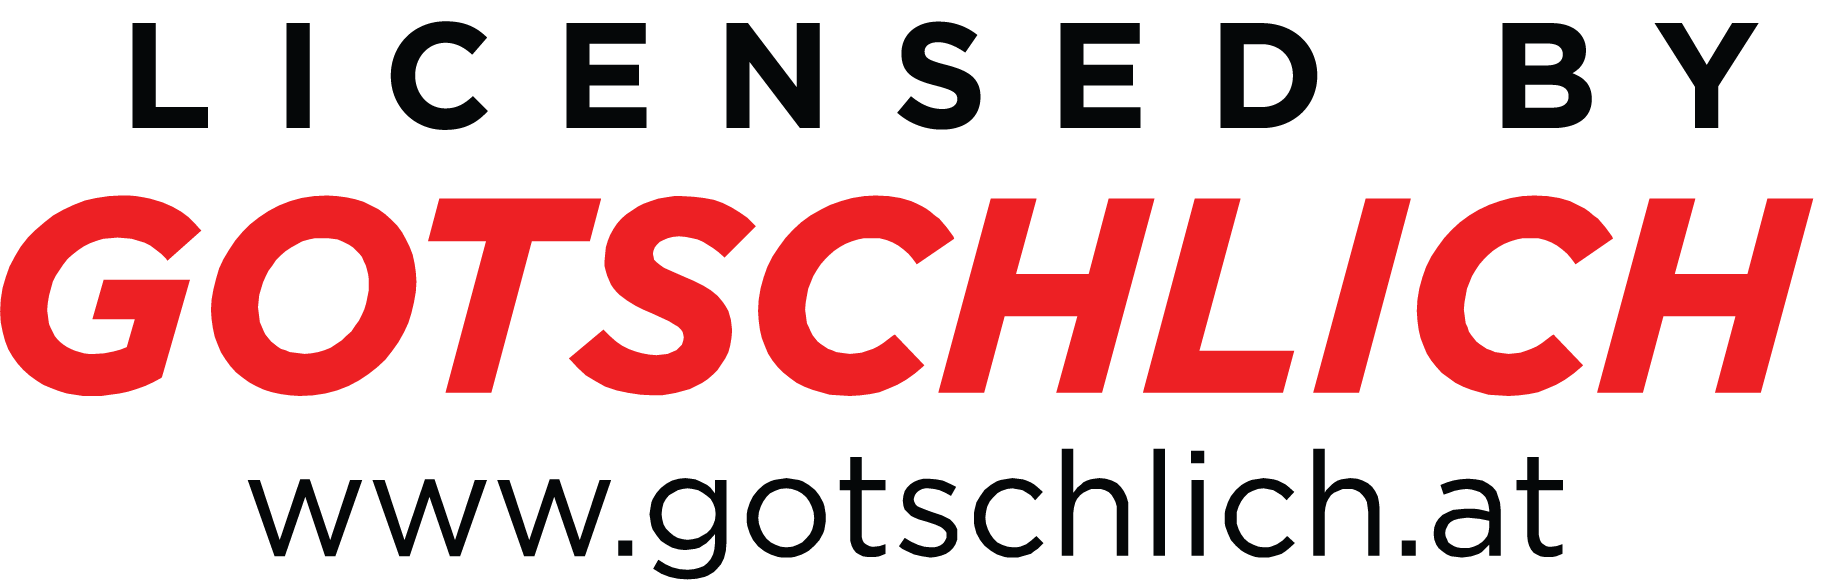 torniquetes y accesos controlados licencia GOTSCHLICH